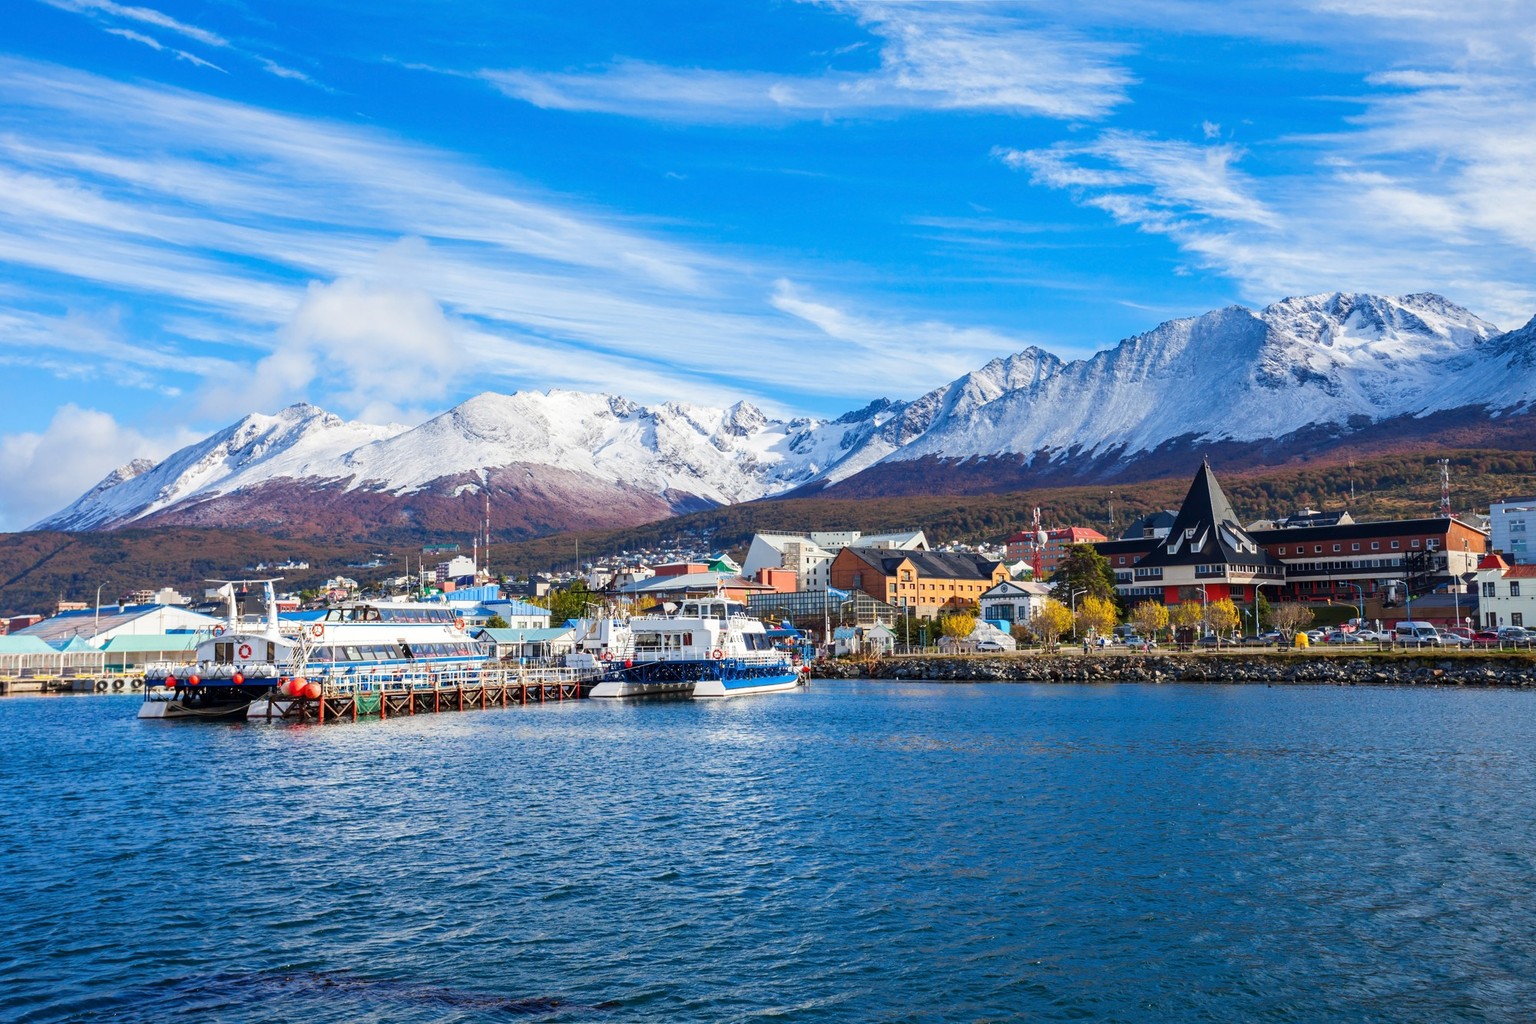 Katamaranische Boote im Hafen von Ushuaia. Ushuaia ist die Hauptstadt der argentinischen Provinz Tierra del Fuego.